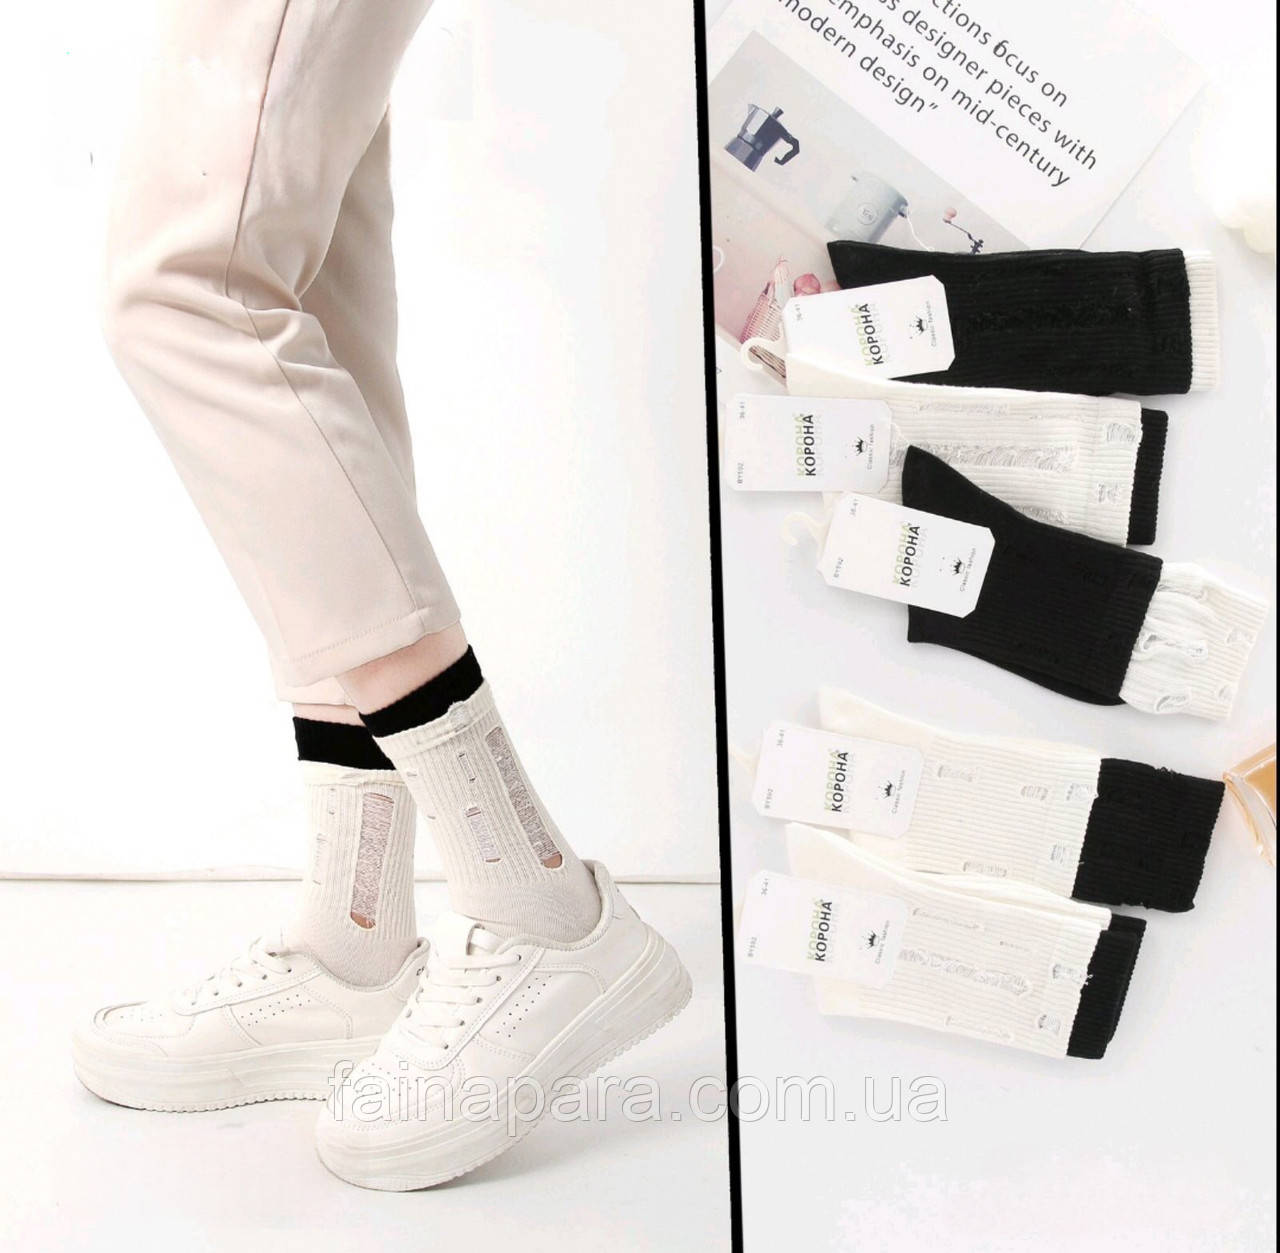 Жіночі шкарпетки з рваностями високі Корона Молочний